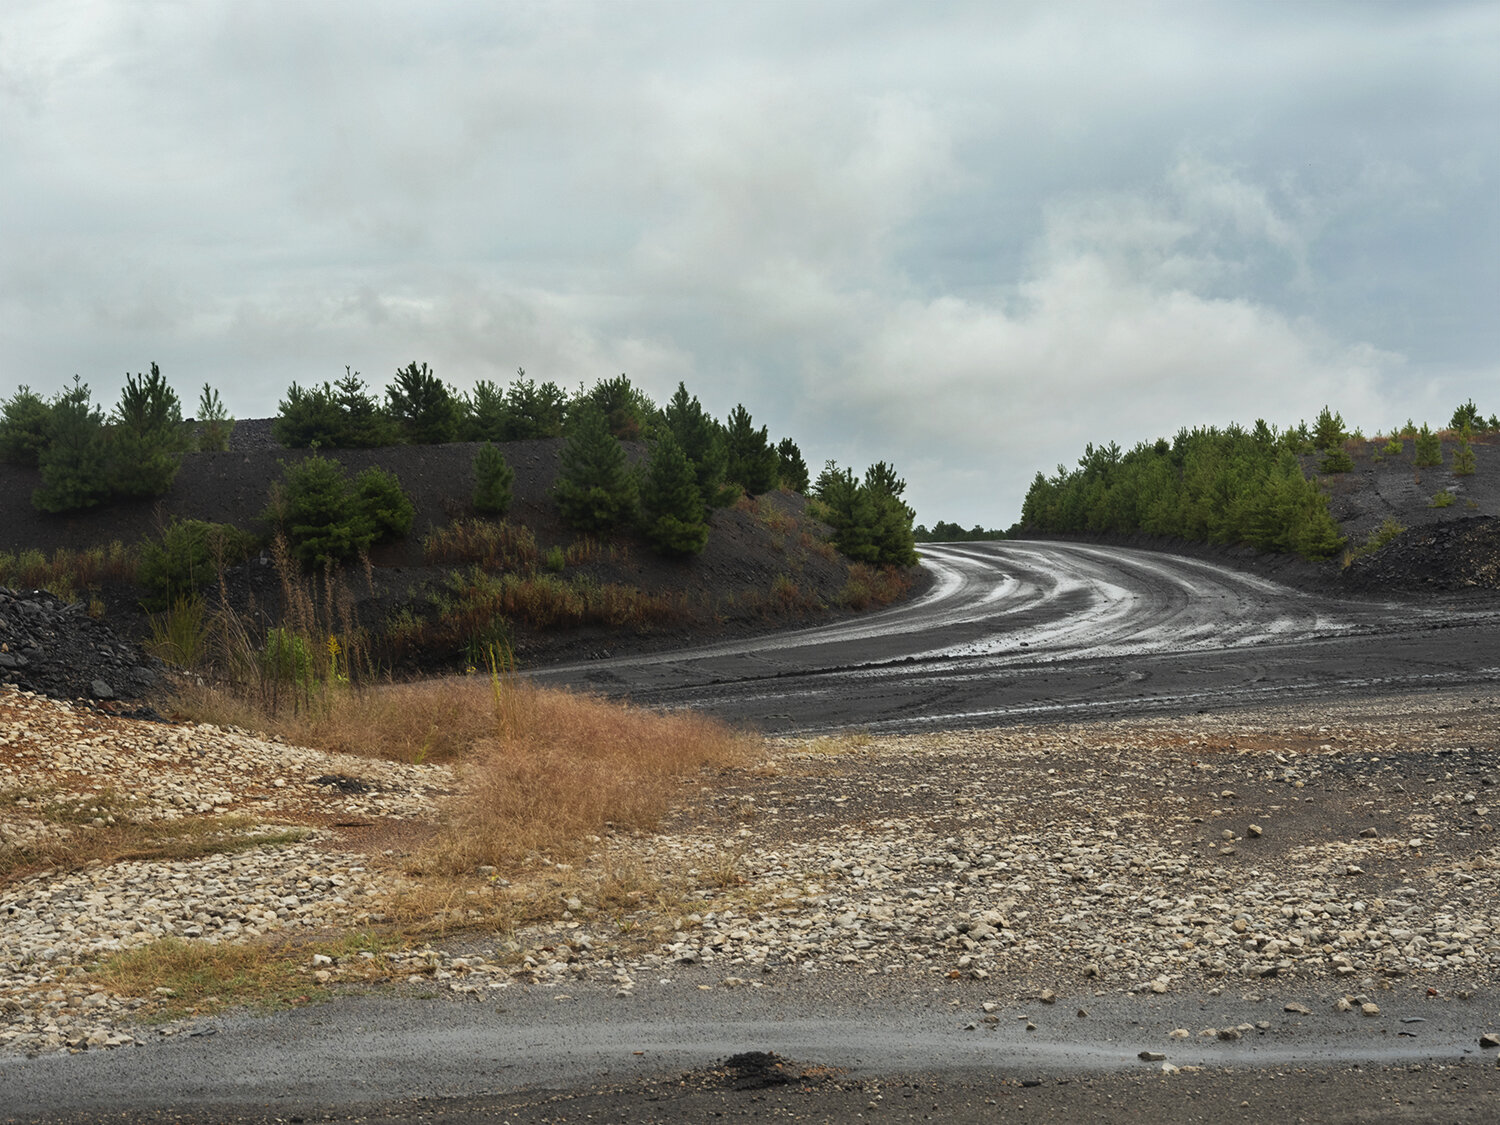   Coal Road  